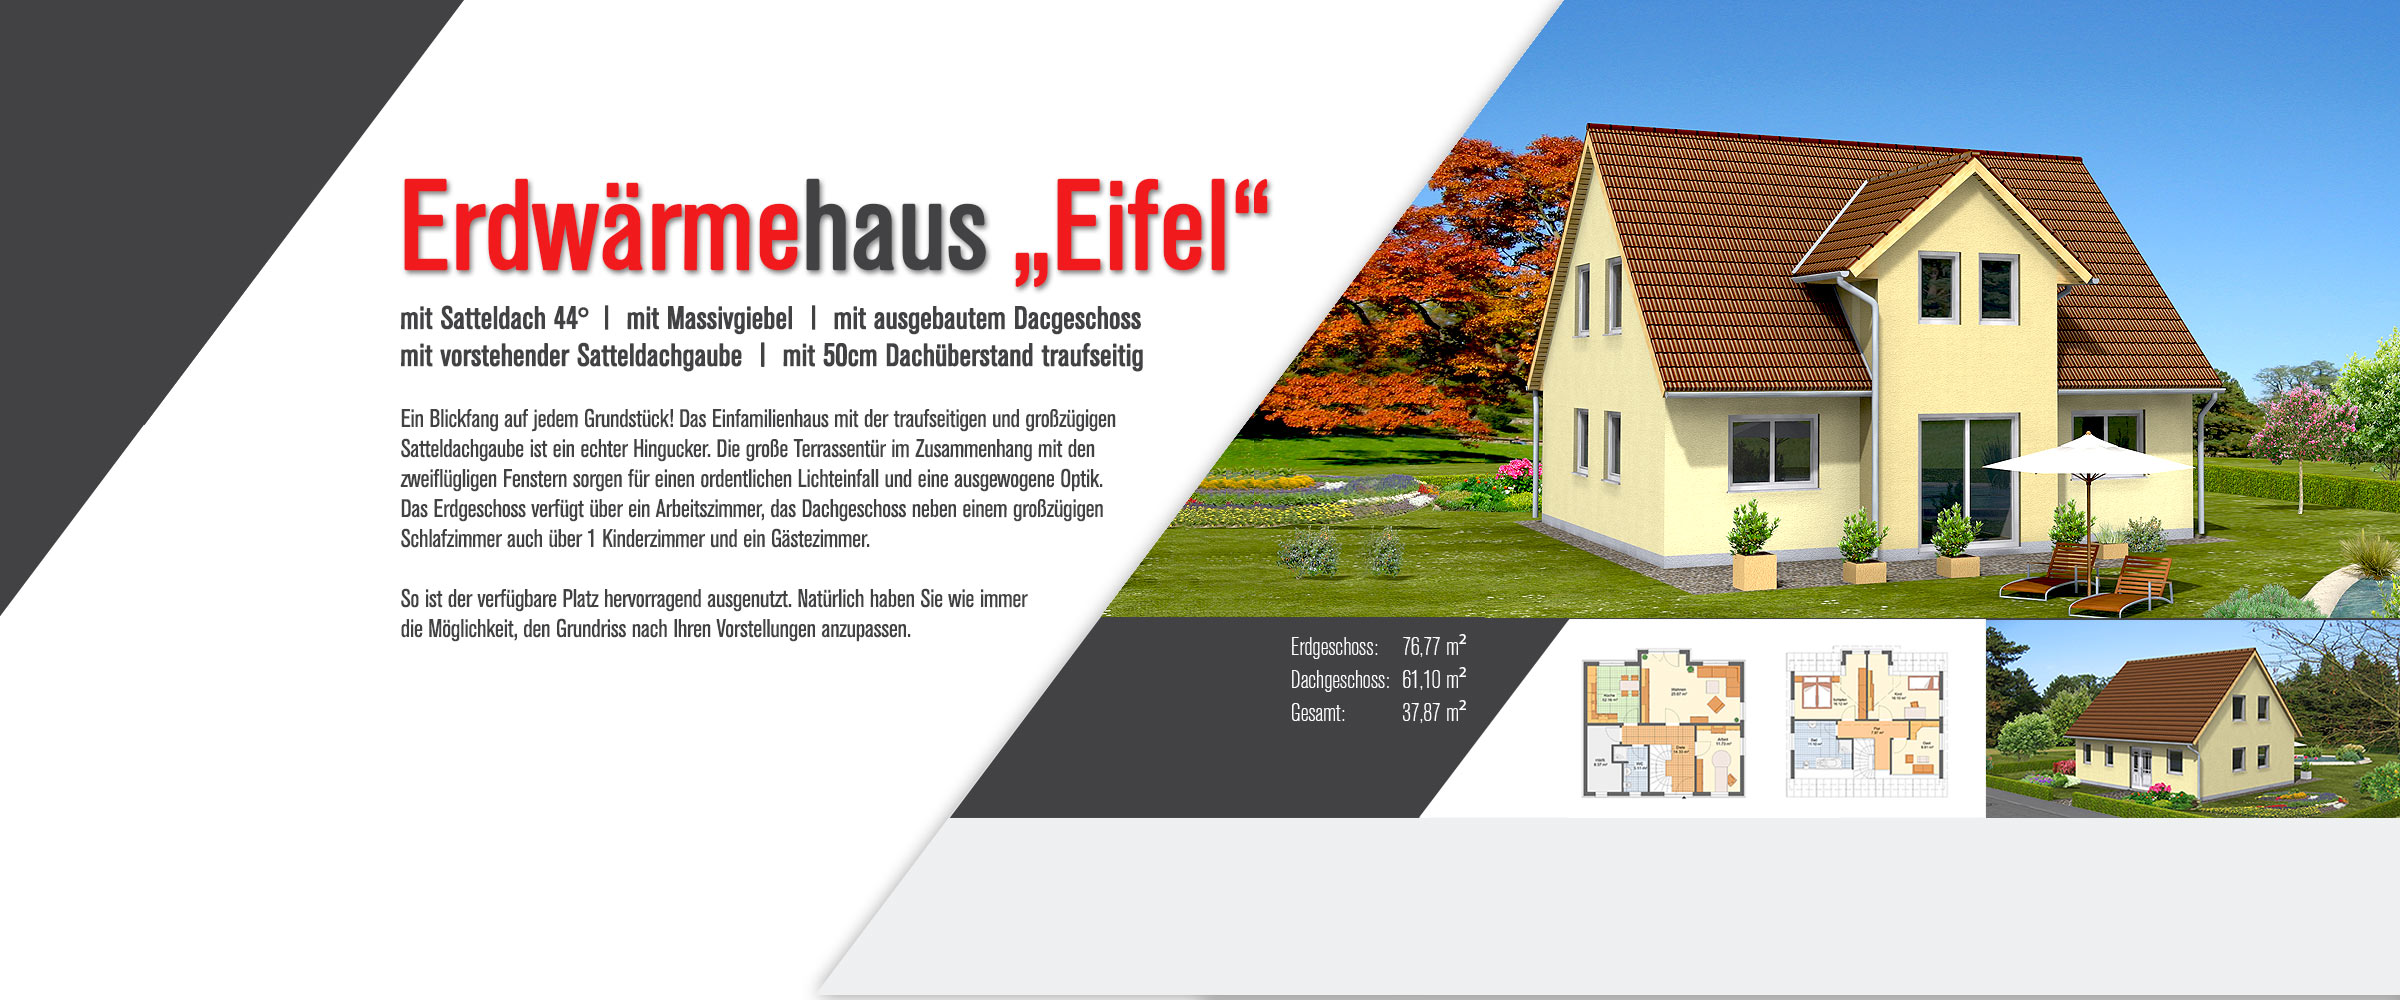 Erdwärmehaus Eifel